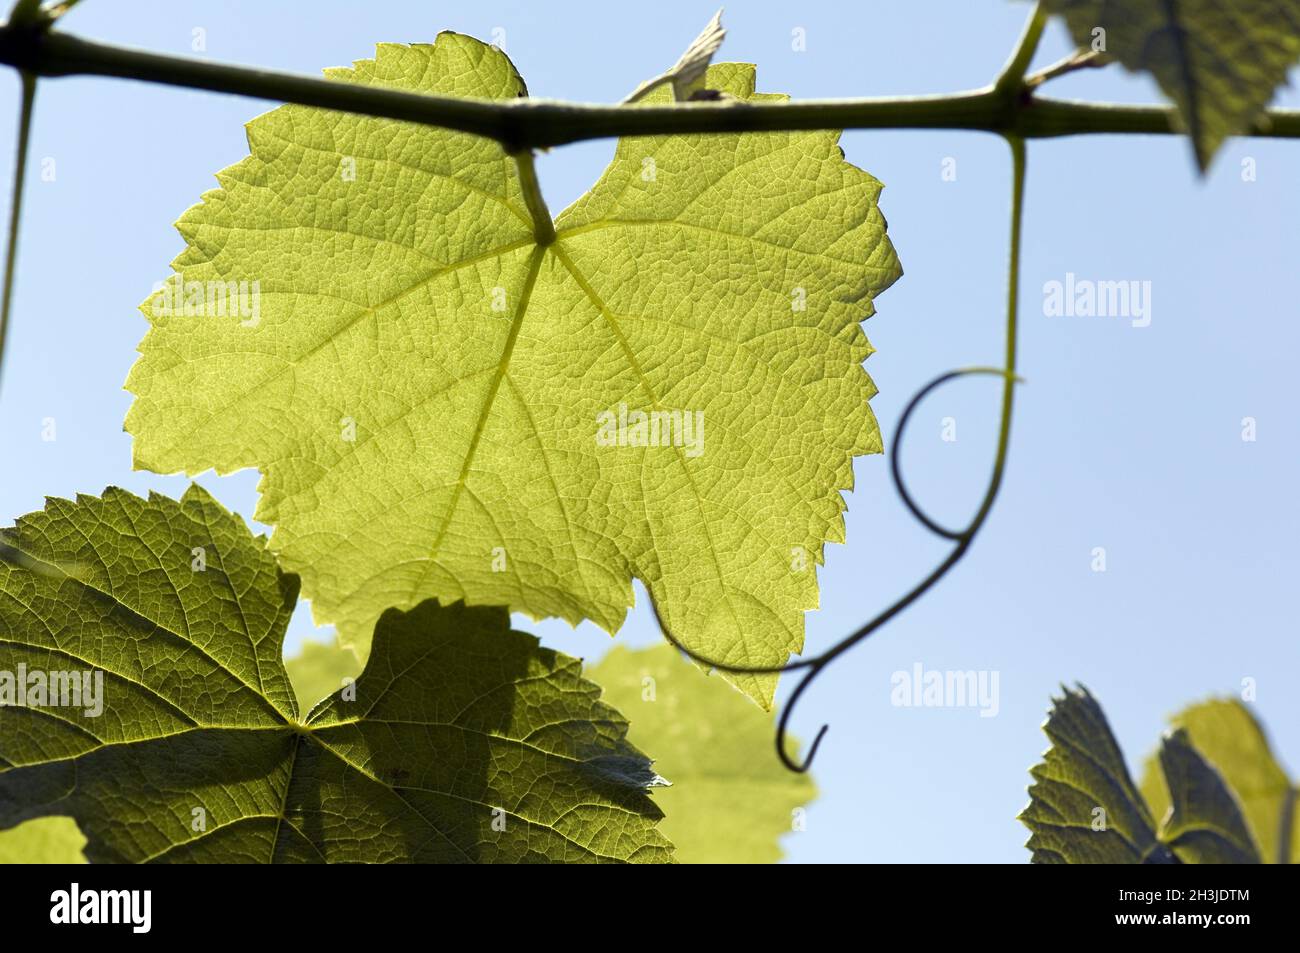 Hoja de vid; Vino blanco; Planta medicinal; Planta útil; Planta cultivada; Vitis vinifera; Foto de stock